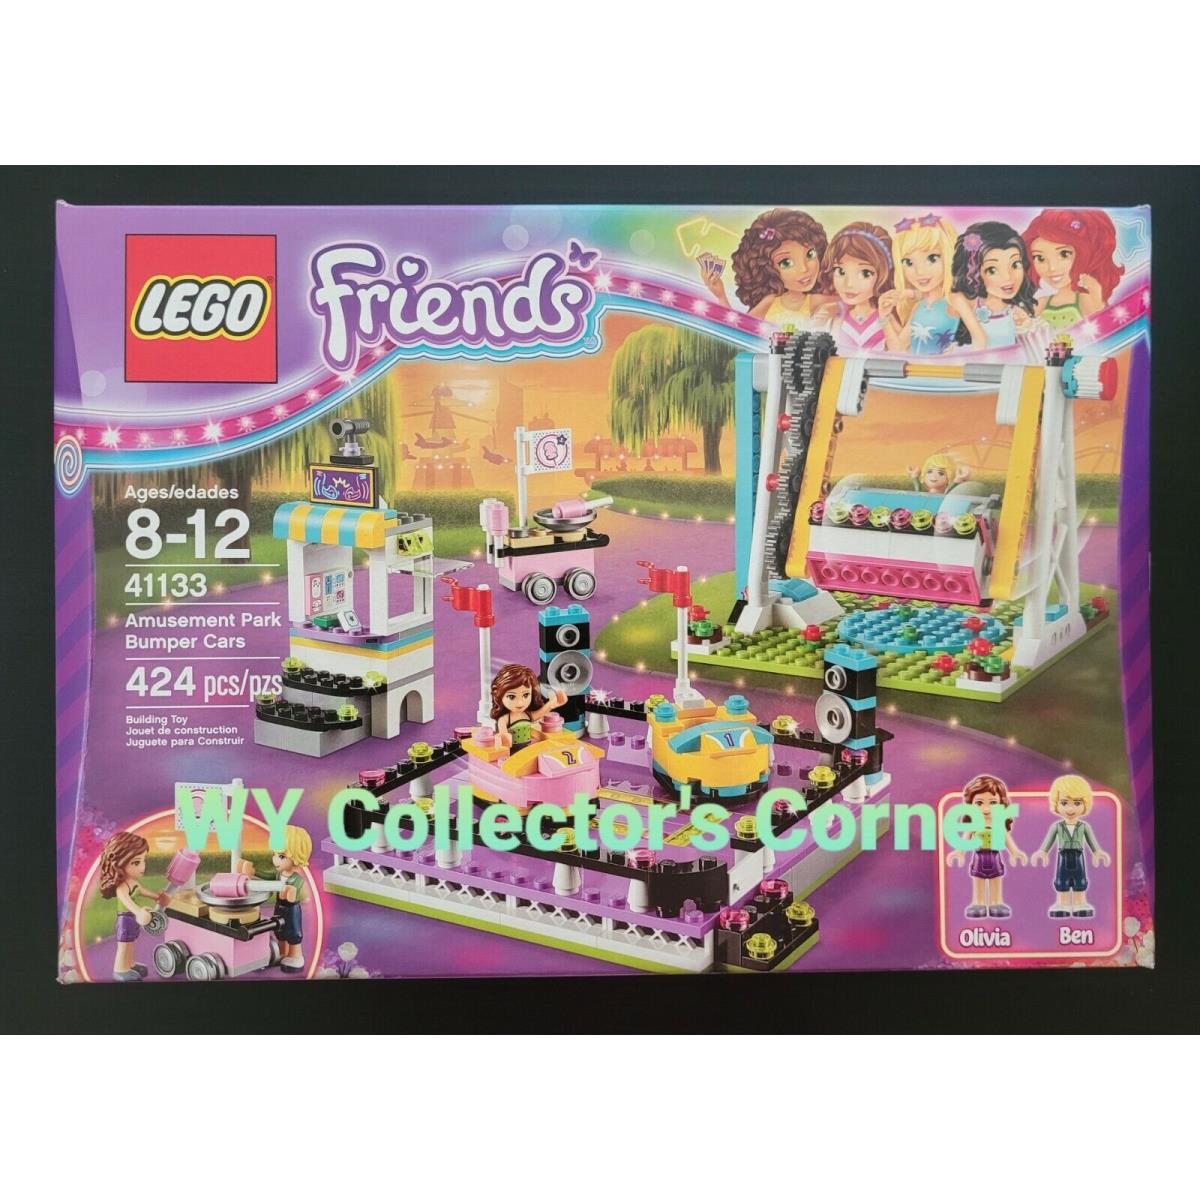 Retired Lego Friends Set 41133 Amusement Park Bumper Cars 6